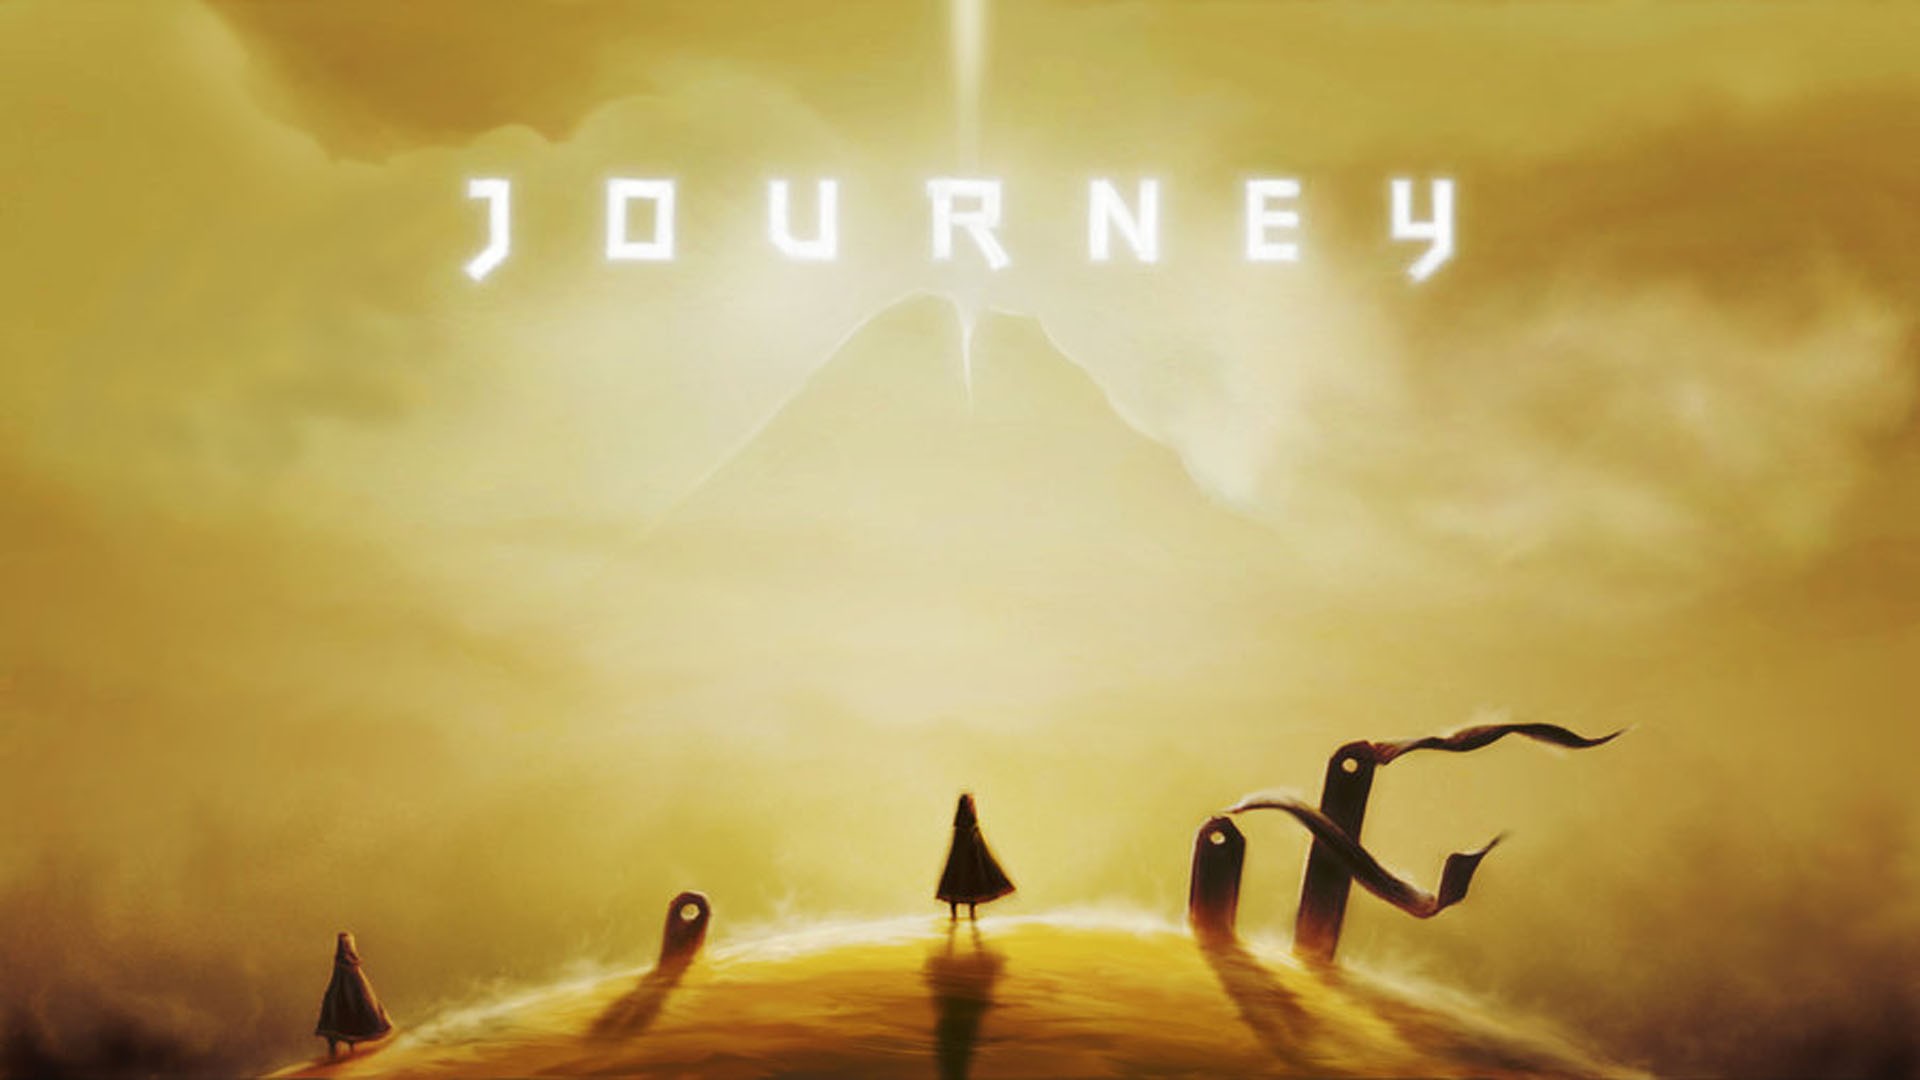 I like journey. Journey игра. Journey (игра, 2012). Journey обложка. Journey игра Постер.